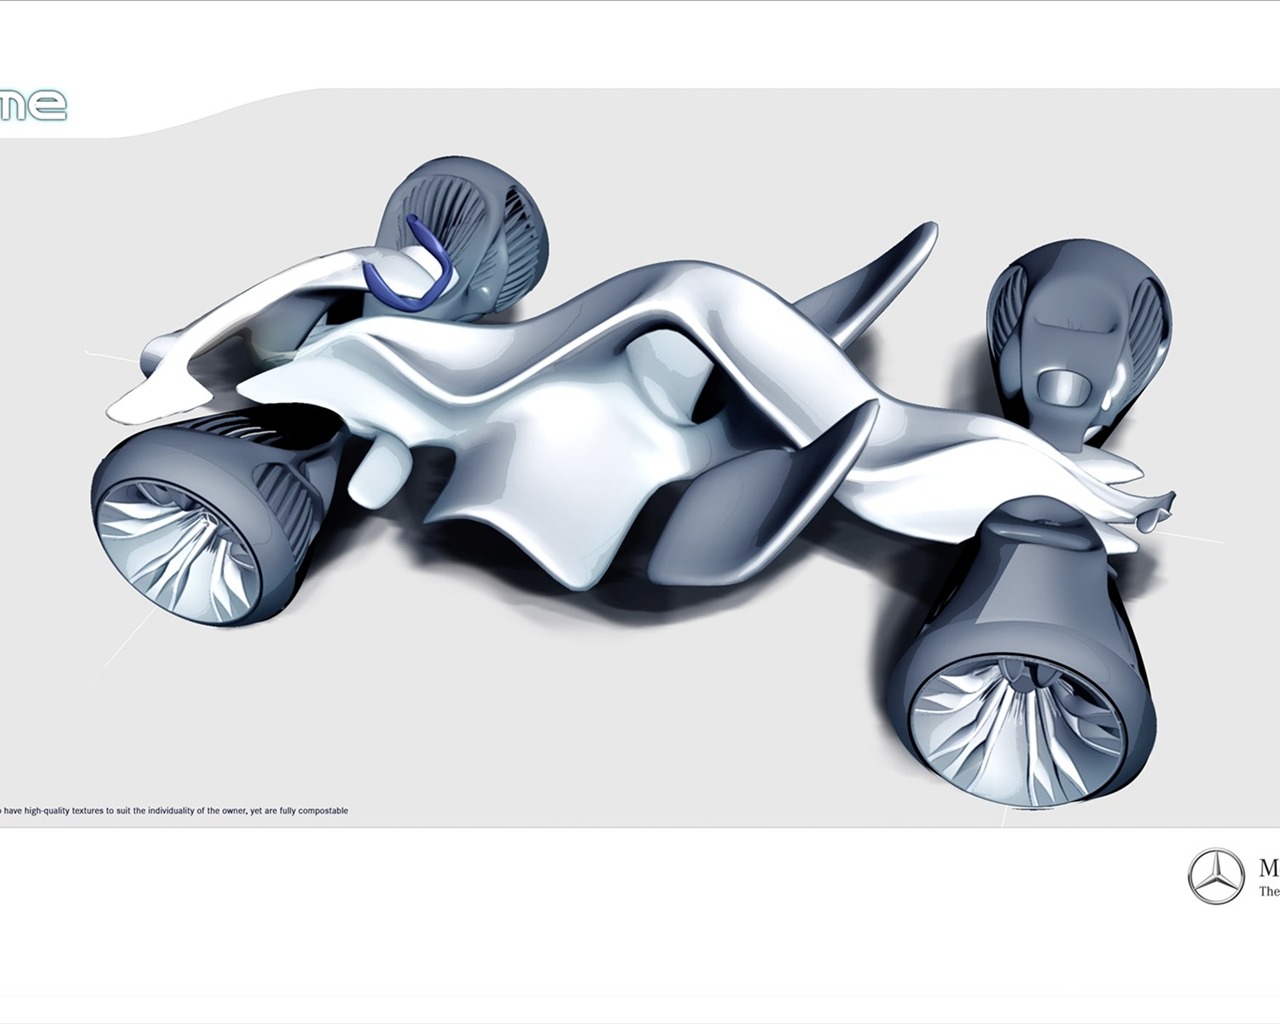 édition spéciale de concept cars fond d'écran (20) #16 - 1280x1024